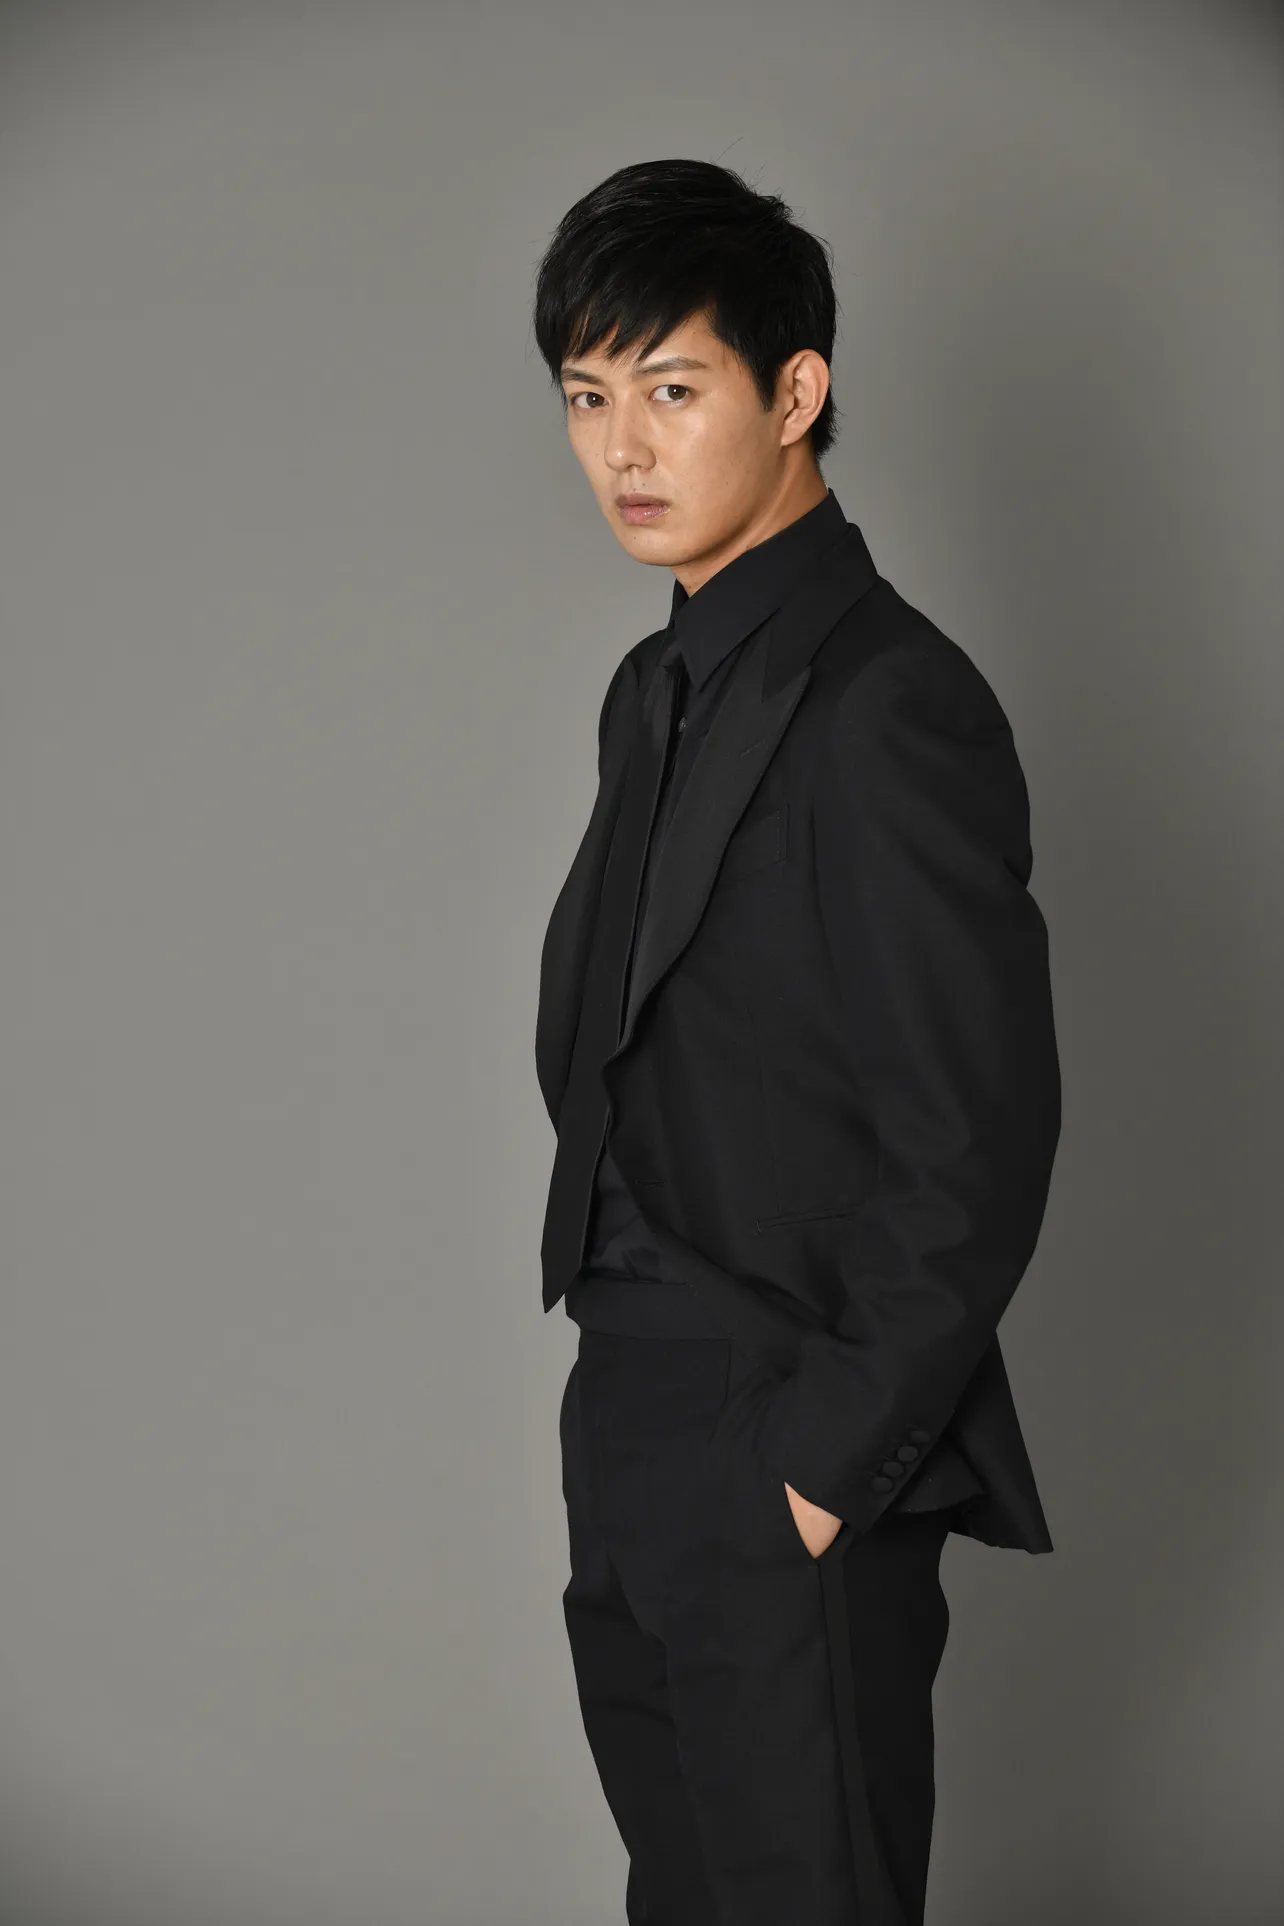 工藤阿須加が2020年1月スタートの「『このミス』大賞ドラマシリーズ」 第4弾「連続殺人鬼カエル男」で主演を務める